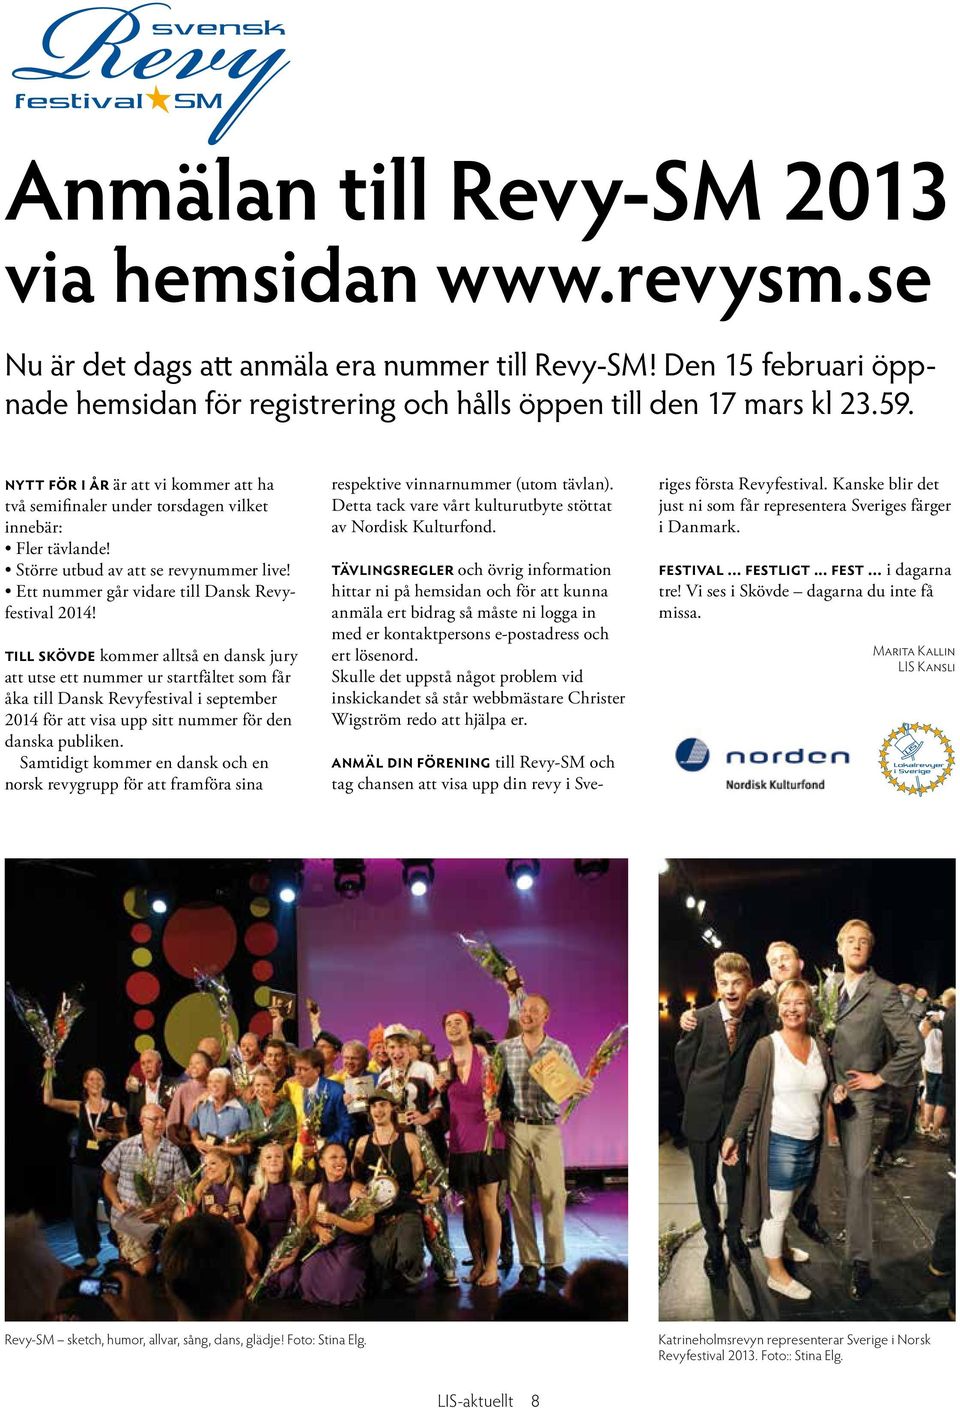 Till Skövde kommer alltså en dansk jury att utse ett nummer ur startfältet som får åka till Dansk Revyfestival i september 2014 för att visa upp sitt nummer för den danska publiken.